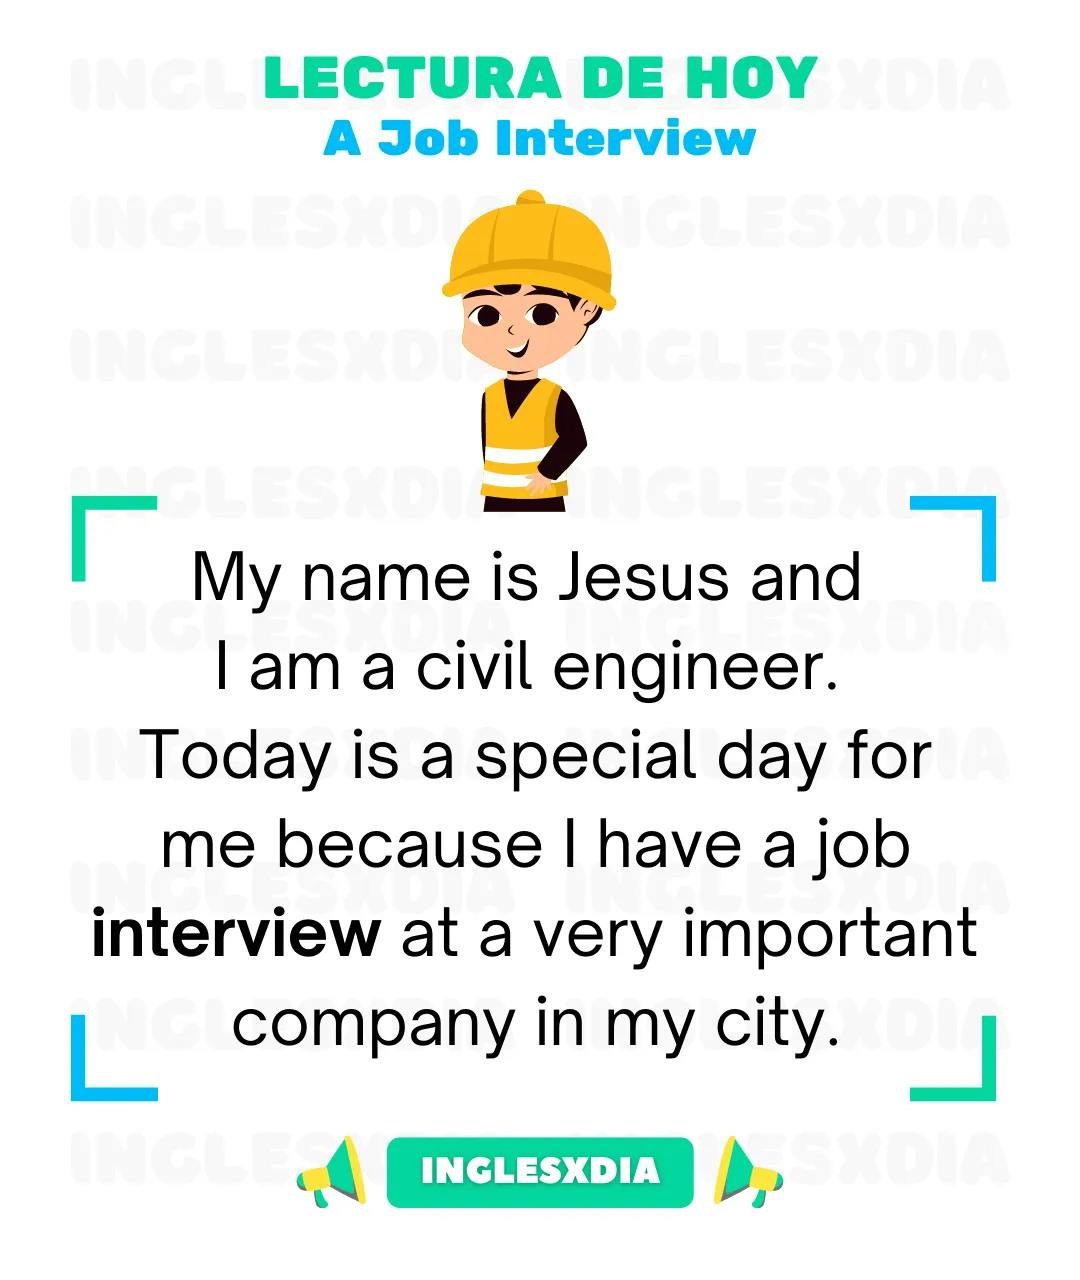 A Job Interview